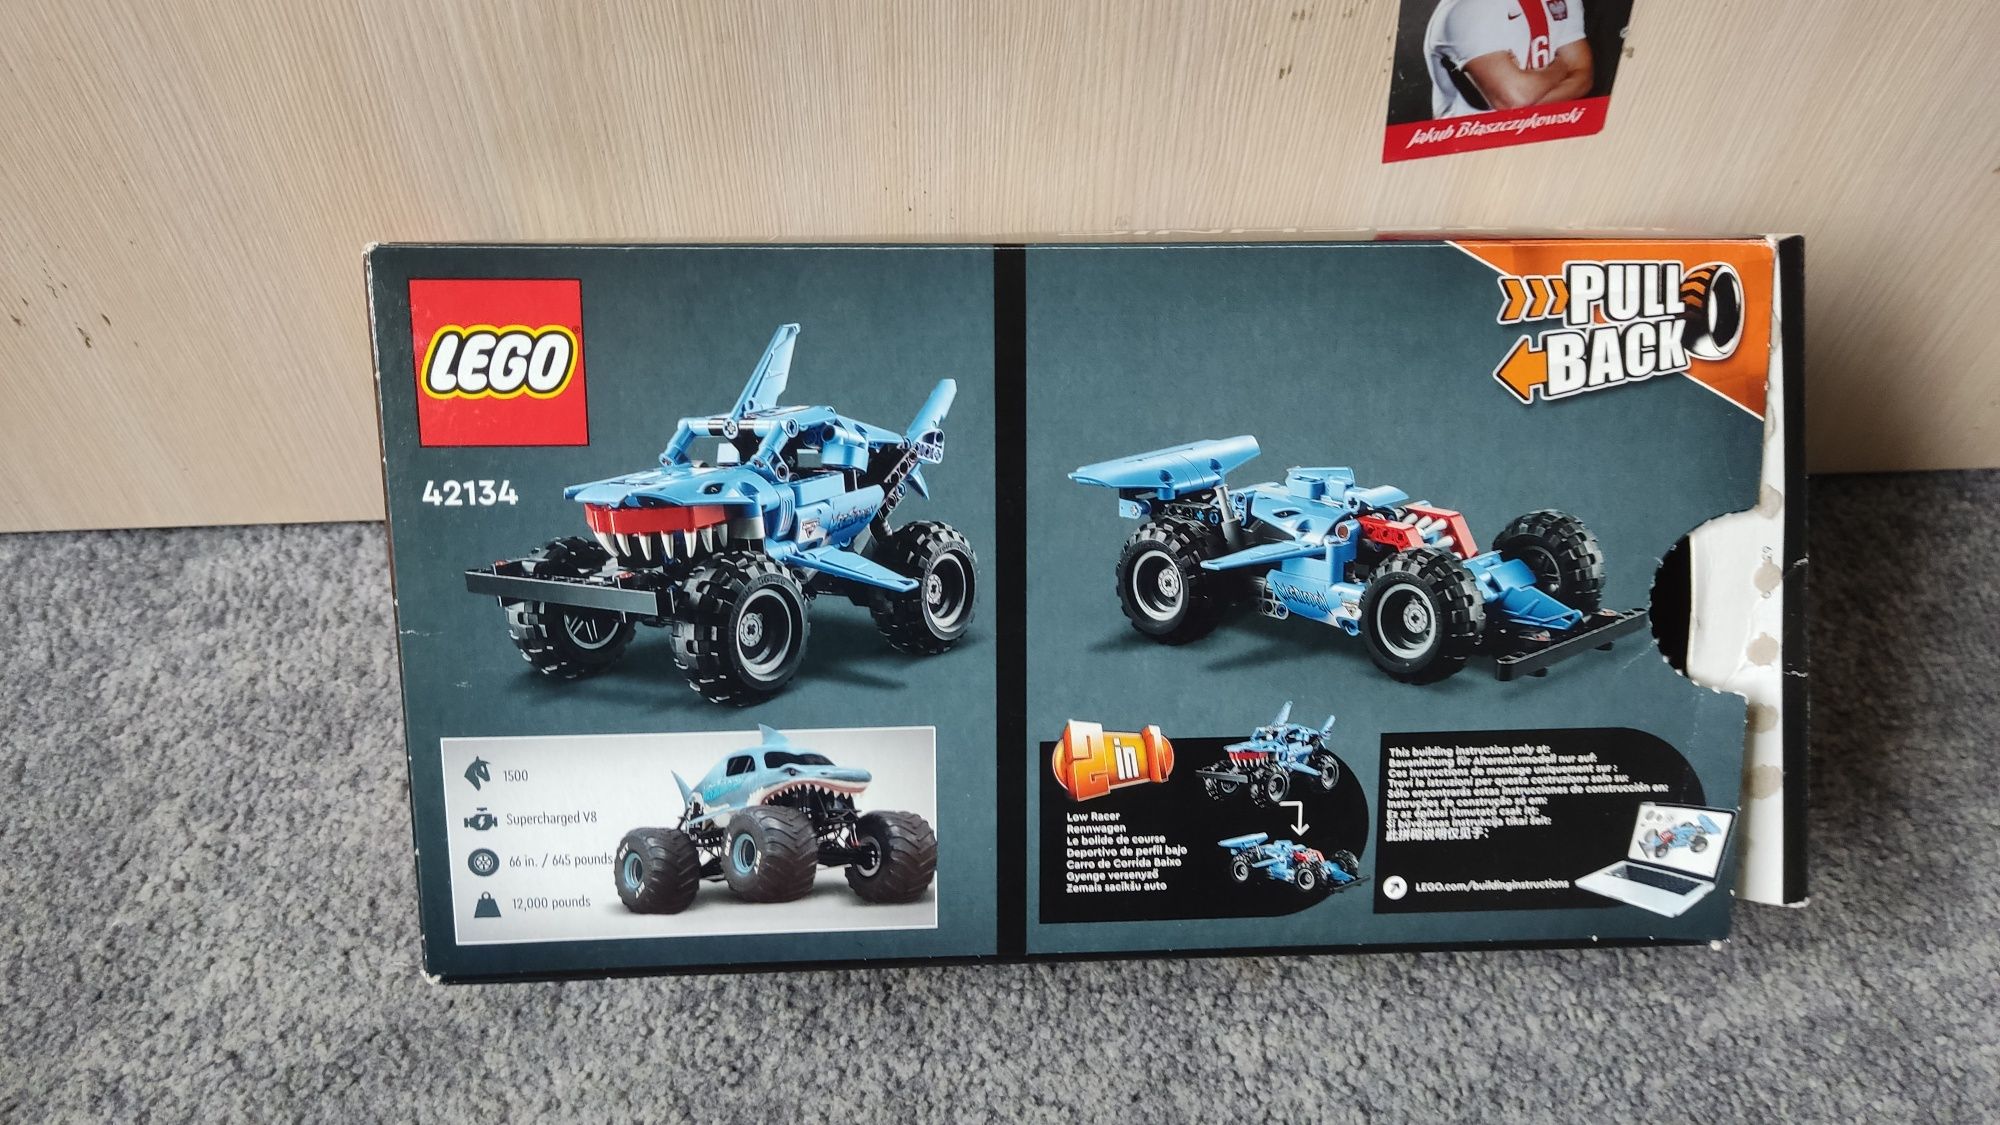 LEGO Technic klocki Monster Jam Megalodon 42134